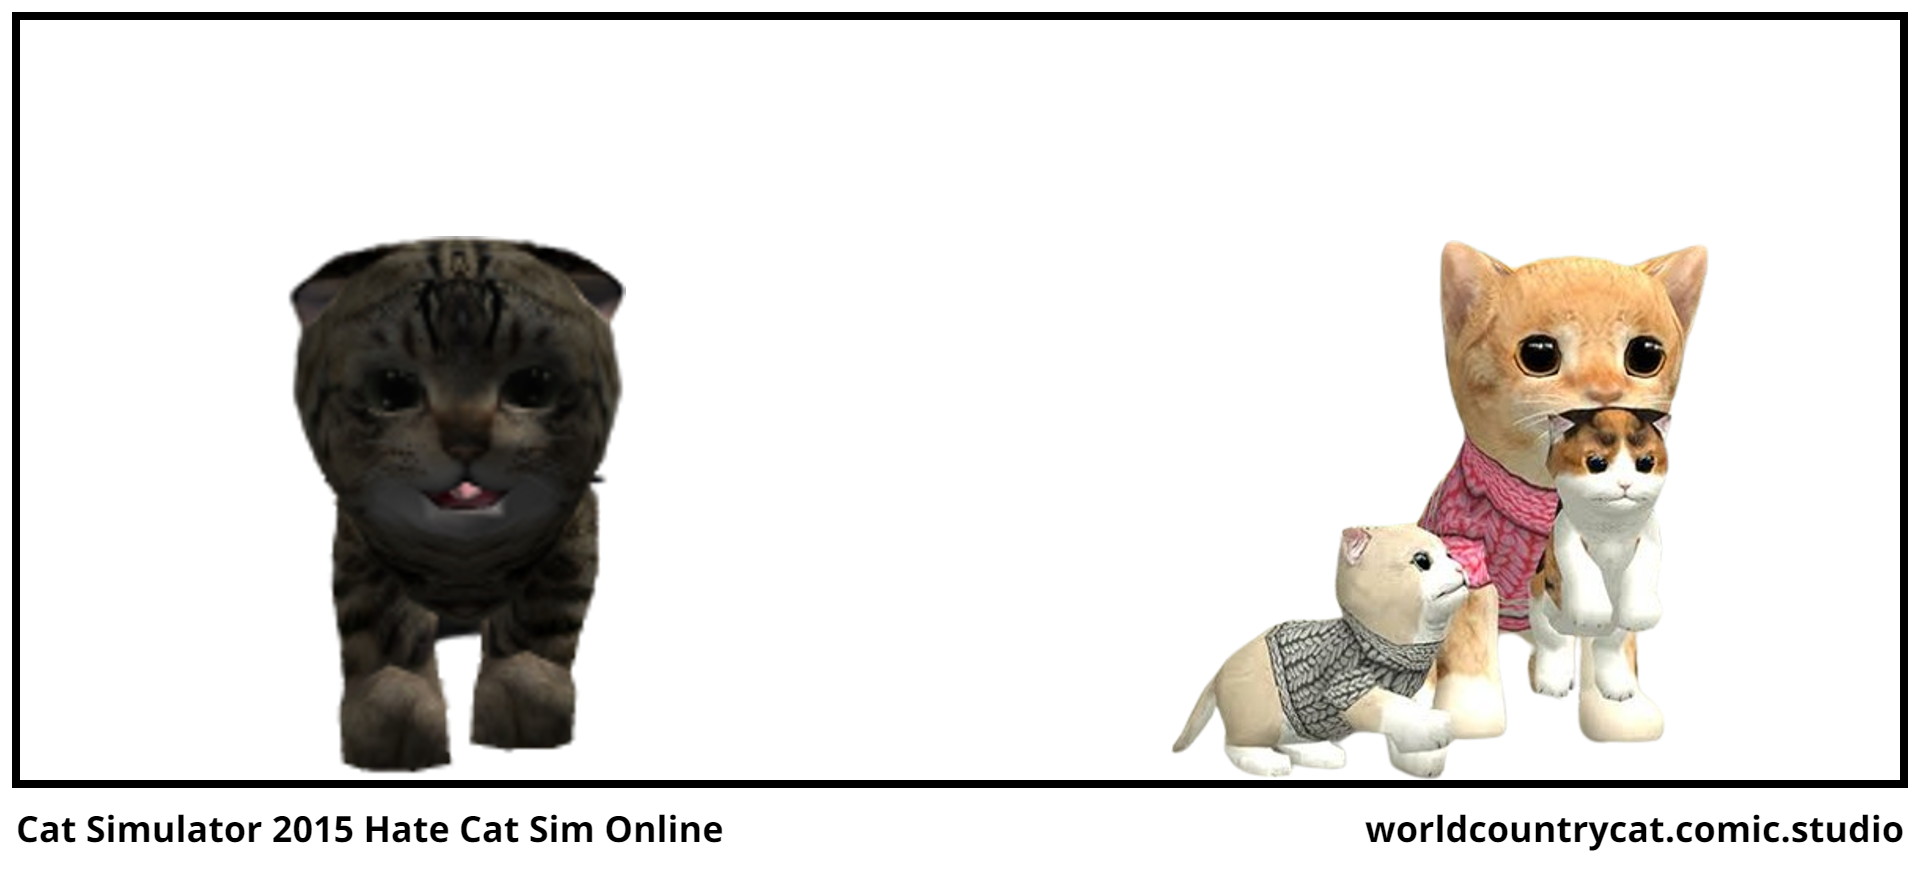 Cat Simulator 2015 Hate Cat Sim Online